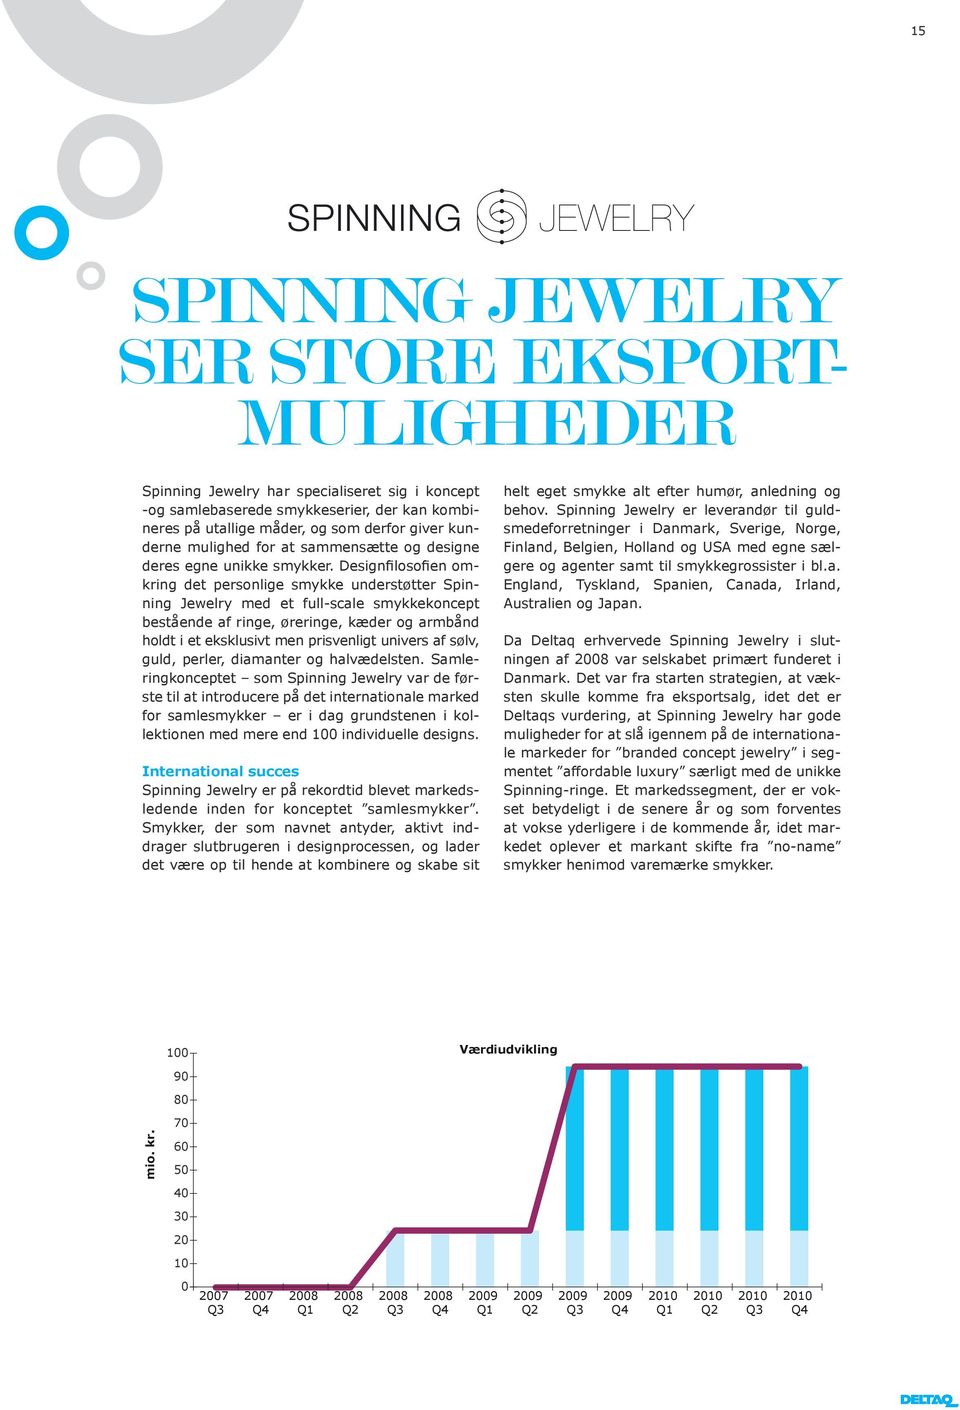 Designfilosofien omkring det personlige smykke understøtter Spinning Jewelry med et full-scale smykkekoncept bestående af ringe, øreringe, kæder og armbånd holdt i et eksklusivt men prisvenligt